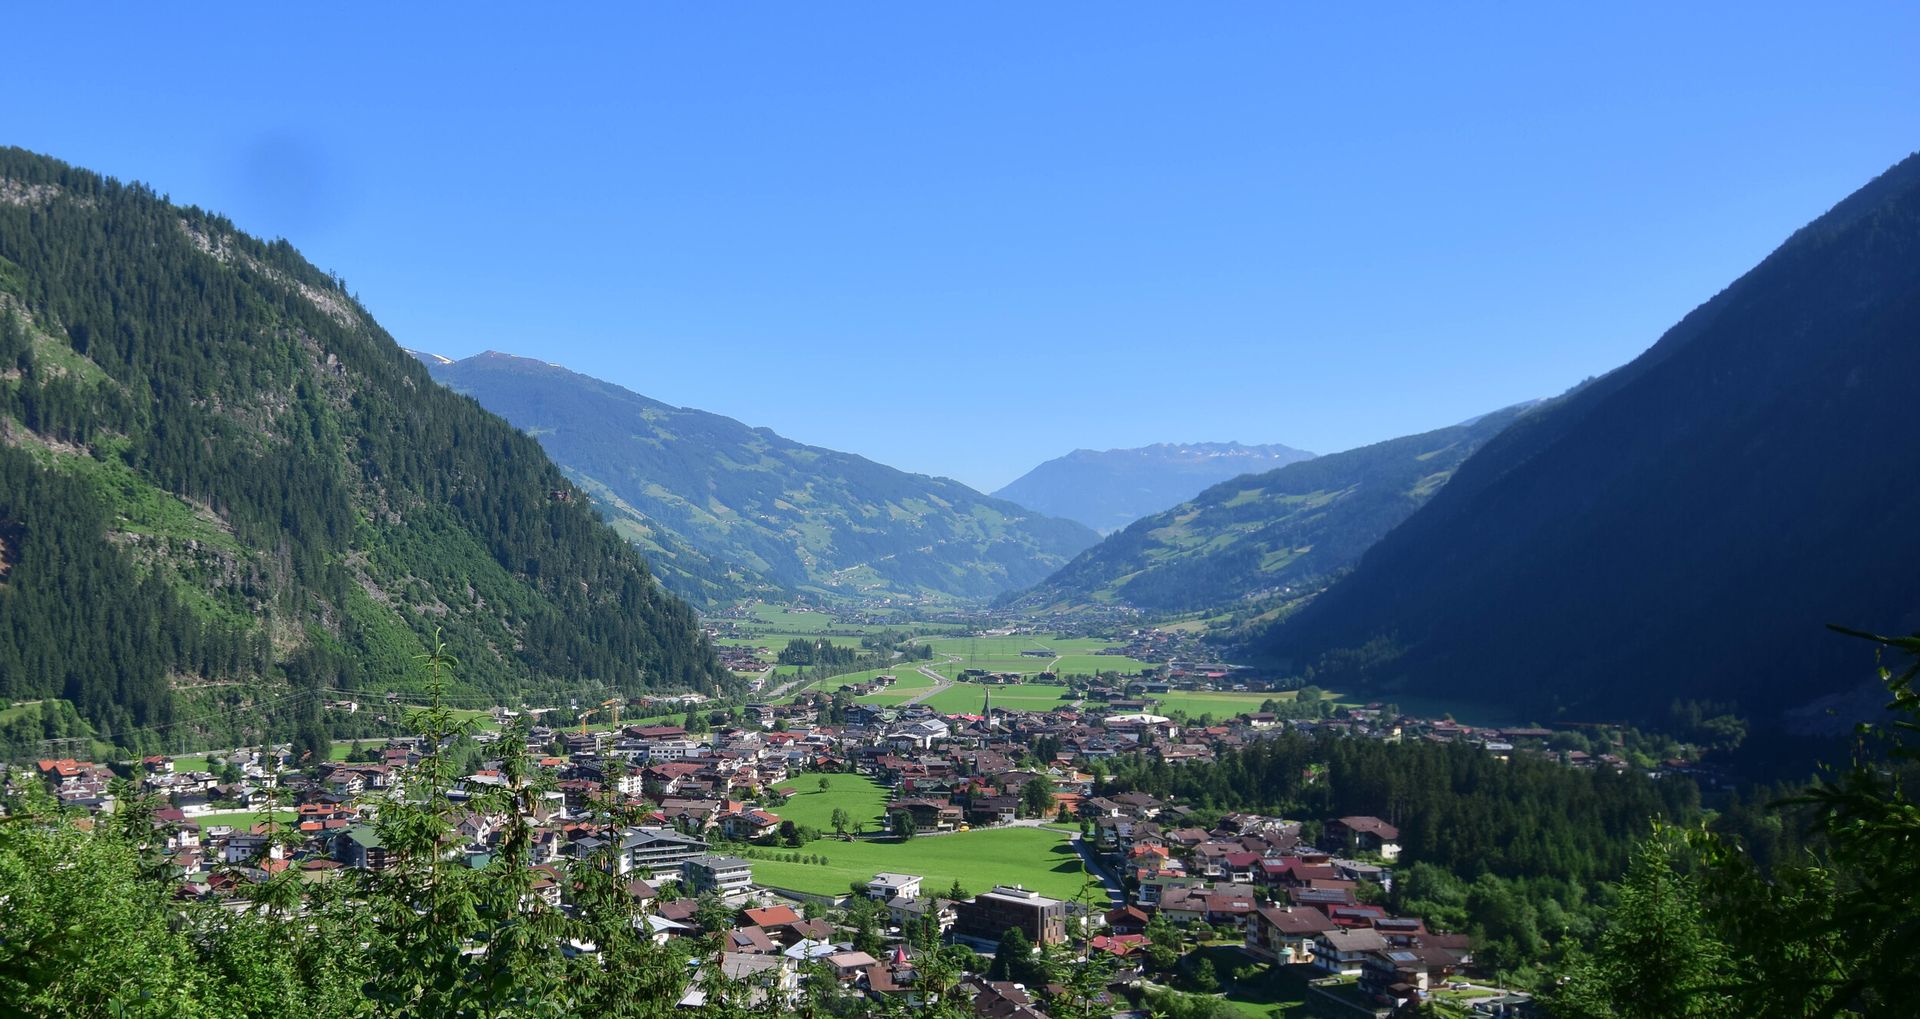 Anmeldung zum Newsletter aus Mayrhofen-Hippach